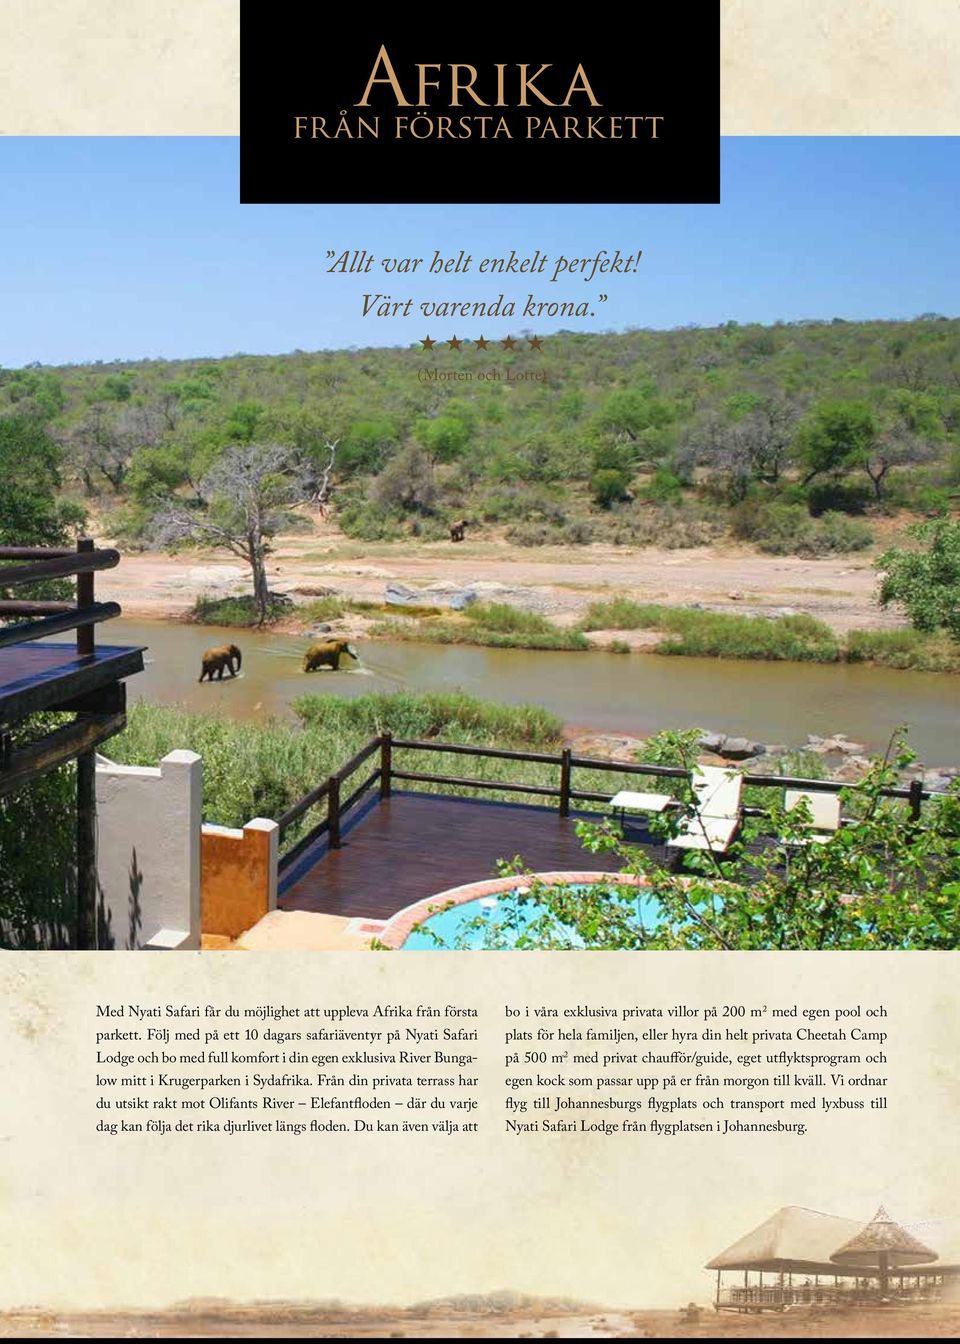 Från din privata terrass har du utsikt rakt mot Olifants River Elefantfloden där du varje dag kan följa det rika djurlivet längs floden.